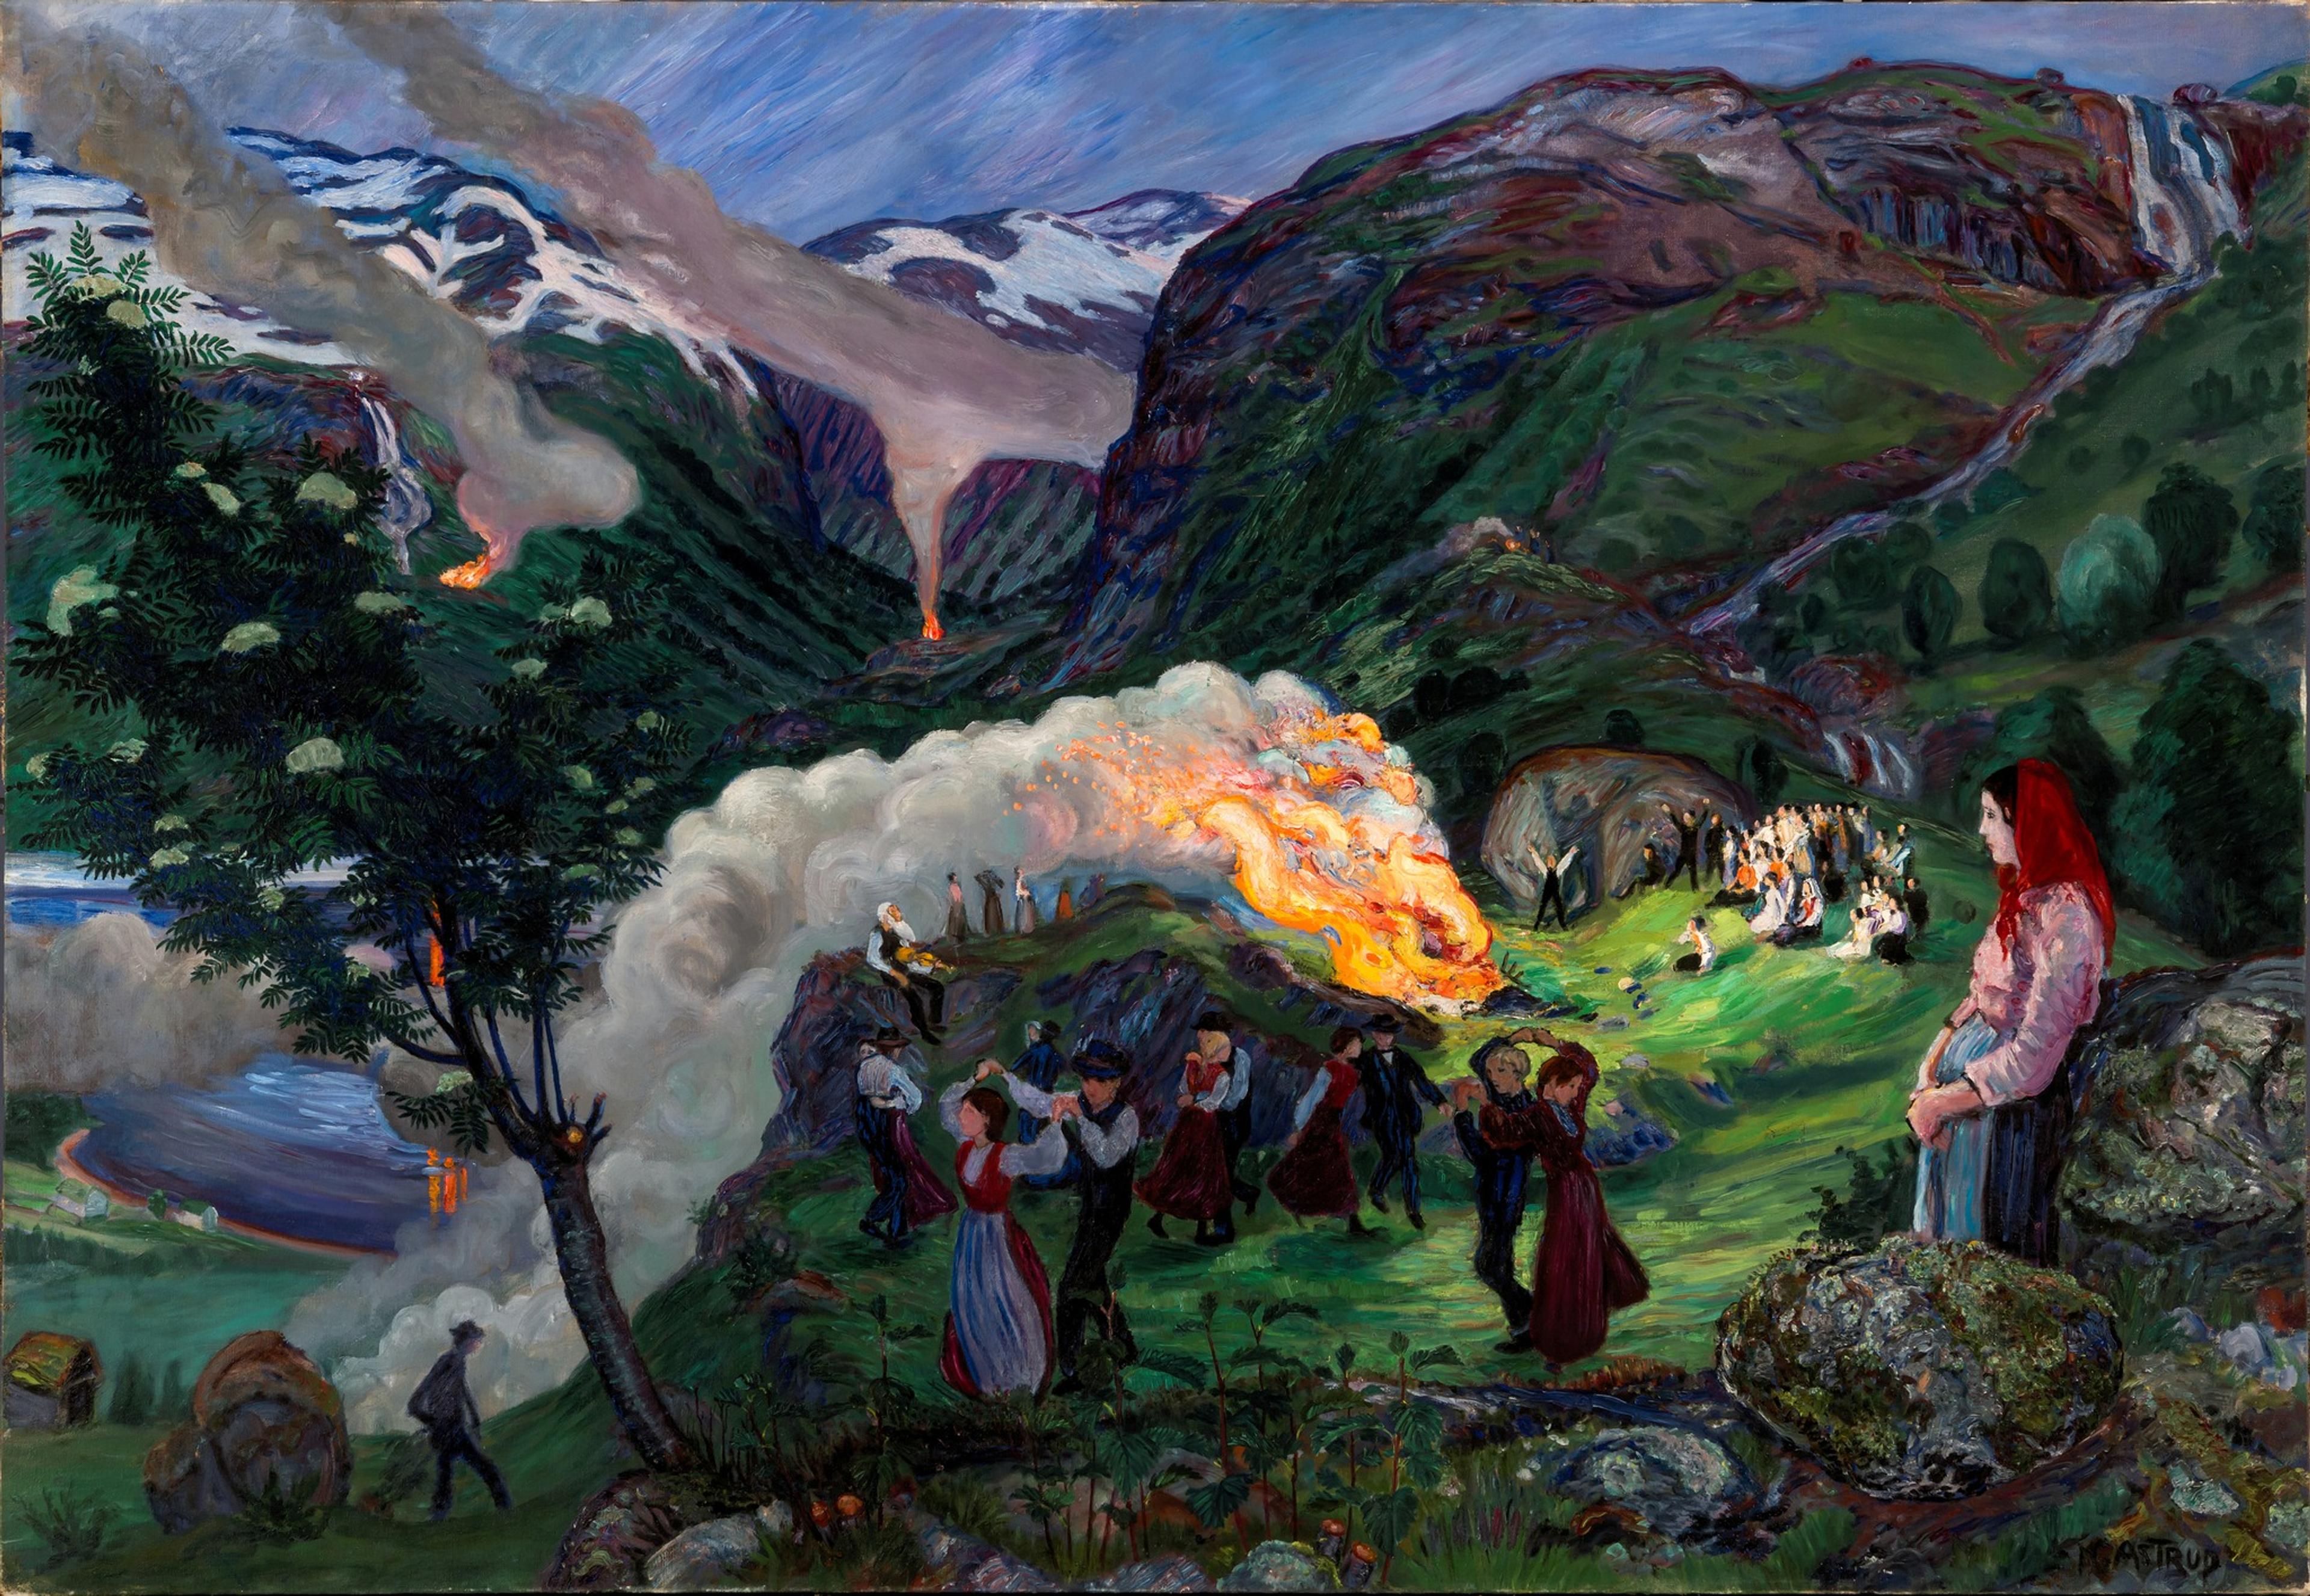 Et landskapsmotiv med fjell i bakgrunnen, og et brennende bål midt i bildet, med dansende mennesker rundt. I forgrunnen til høyre ser vi en kvinne som betrakter scenen rundt bålet.